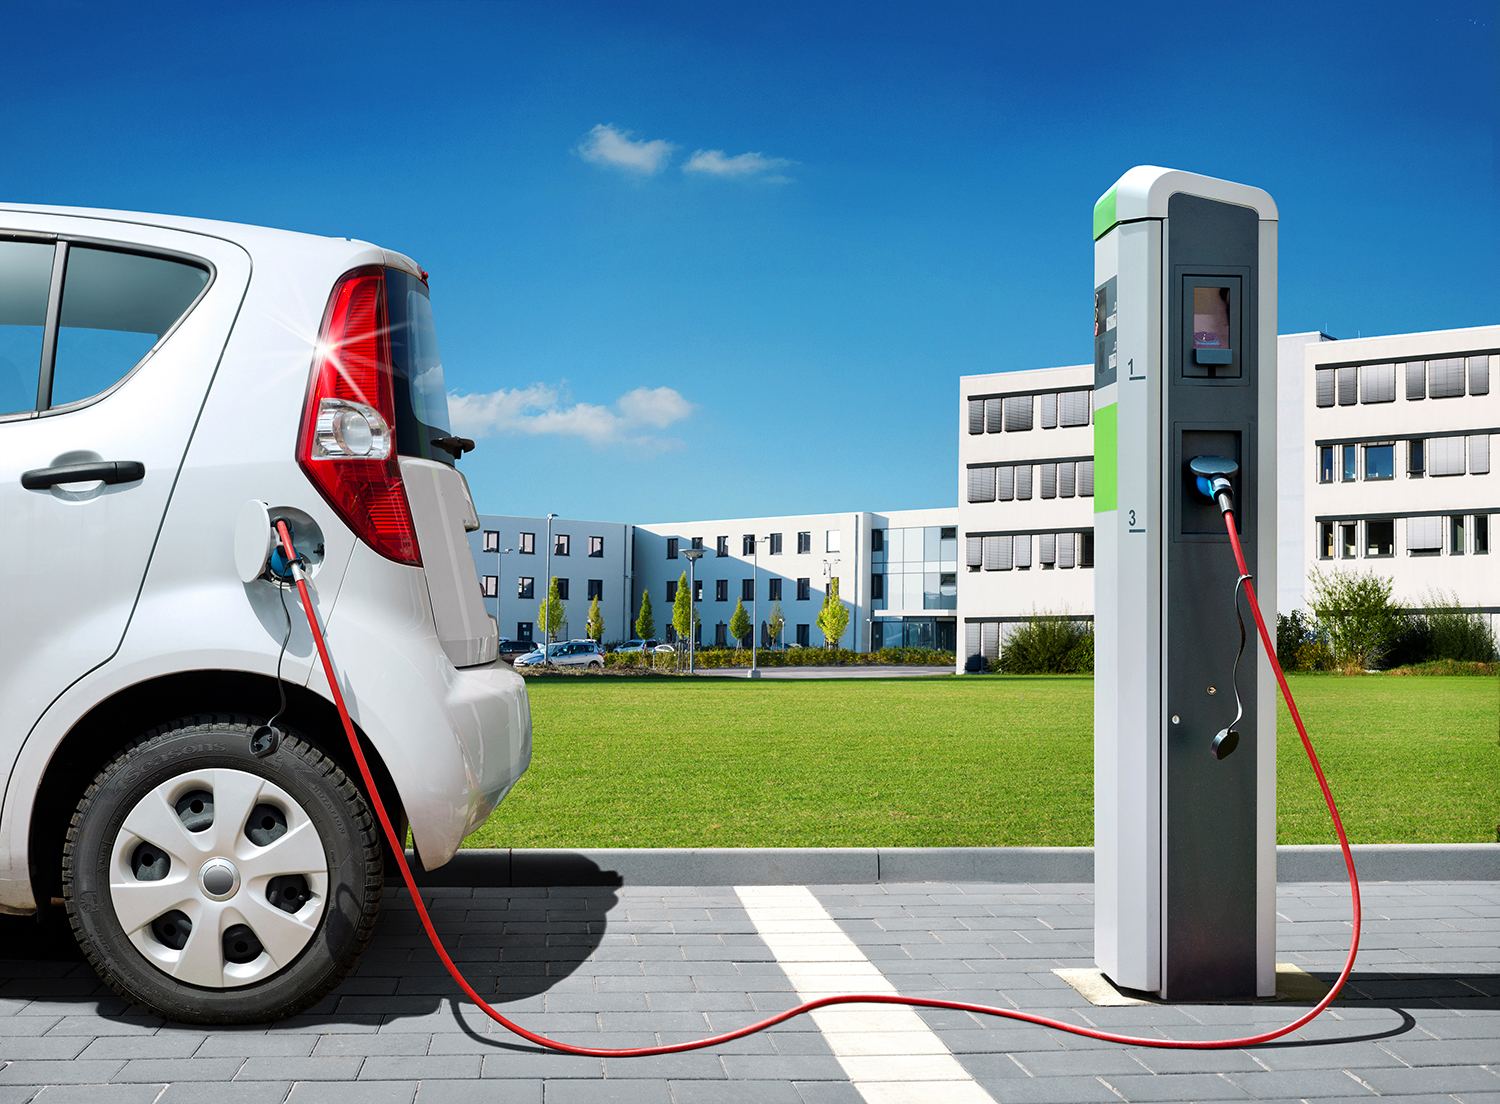 Kiinteistöliitto ei kannata sähköautojen latauspisteisiin tiukempaa sääntelyä kuin EU-direktiivi edellyttää